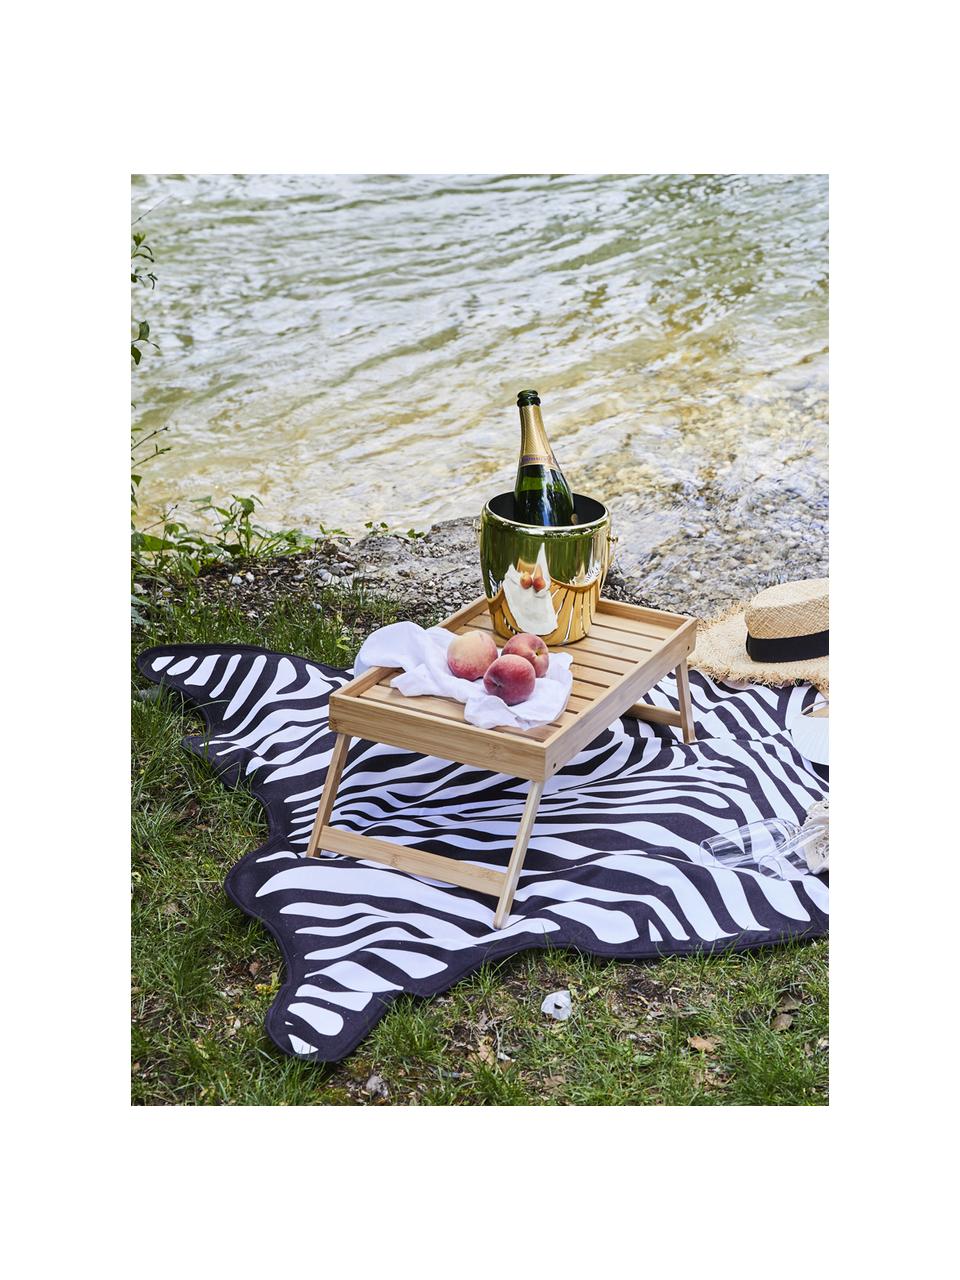 Strandtuch Wildhorse mit Zebra Print, 55% Polyester, 45% Baumwolle
Sehr leichte Qualität 340 g/m², Schwarz, Weiss, 112 x 150 cm